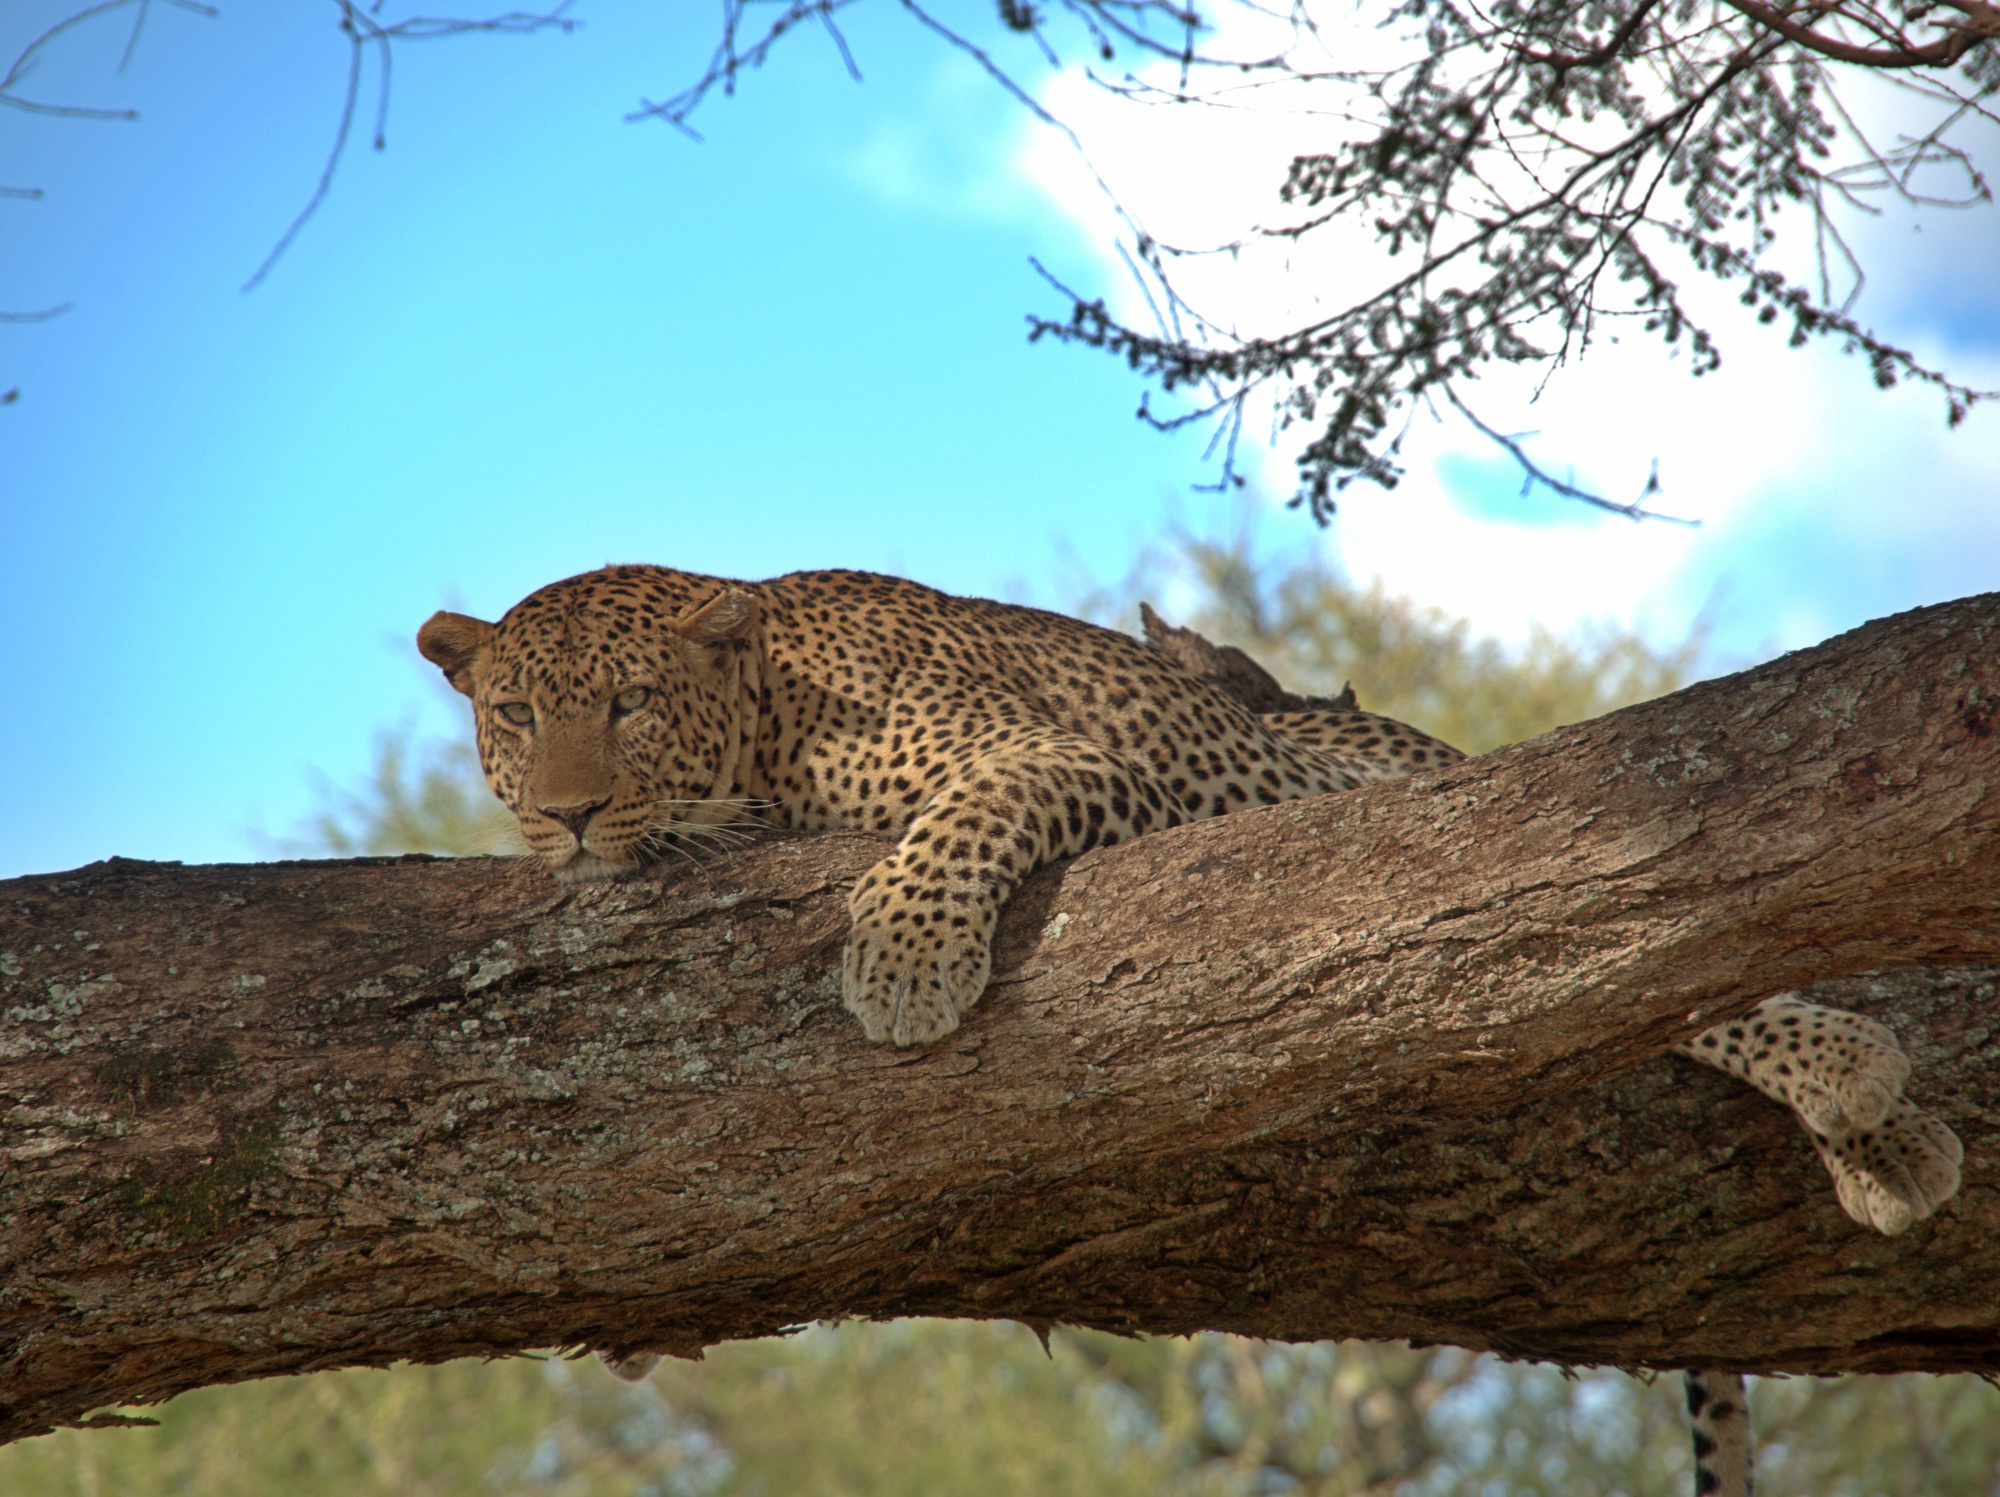 Sleepy but alert leopard